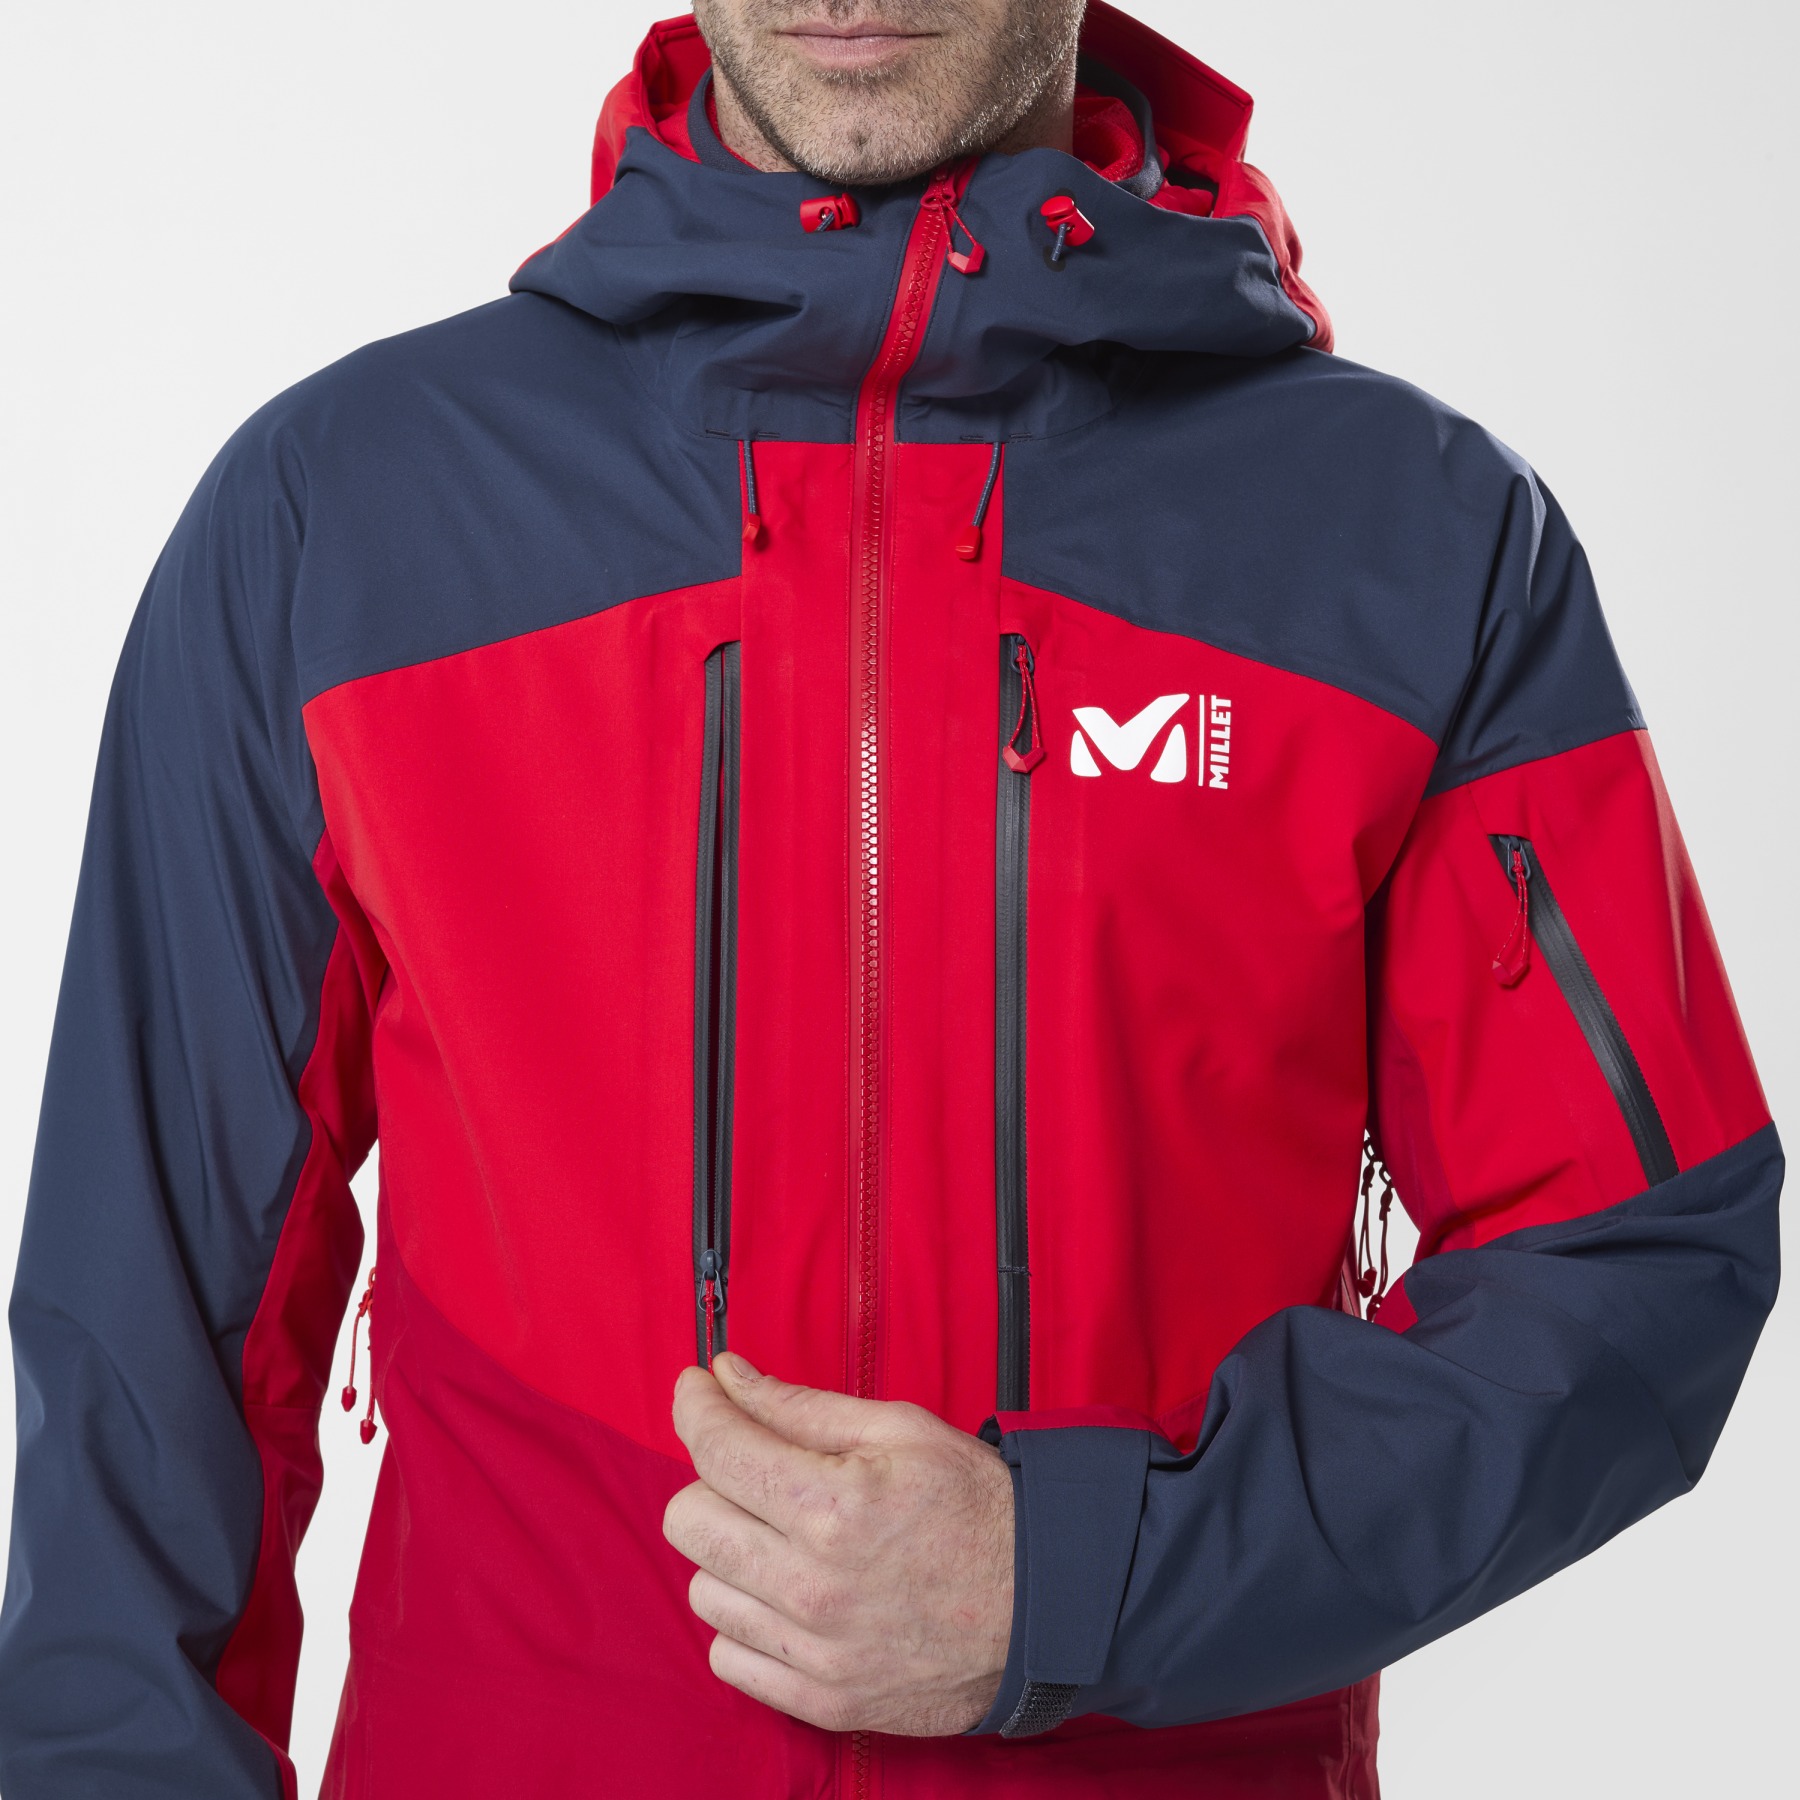 Millet Veste de Ski Homme - White 3L - Deep Red/Saphir - BIKE24